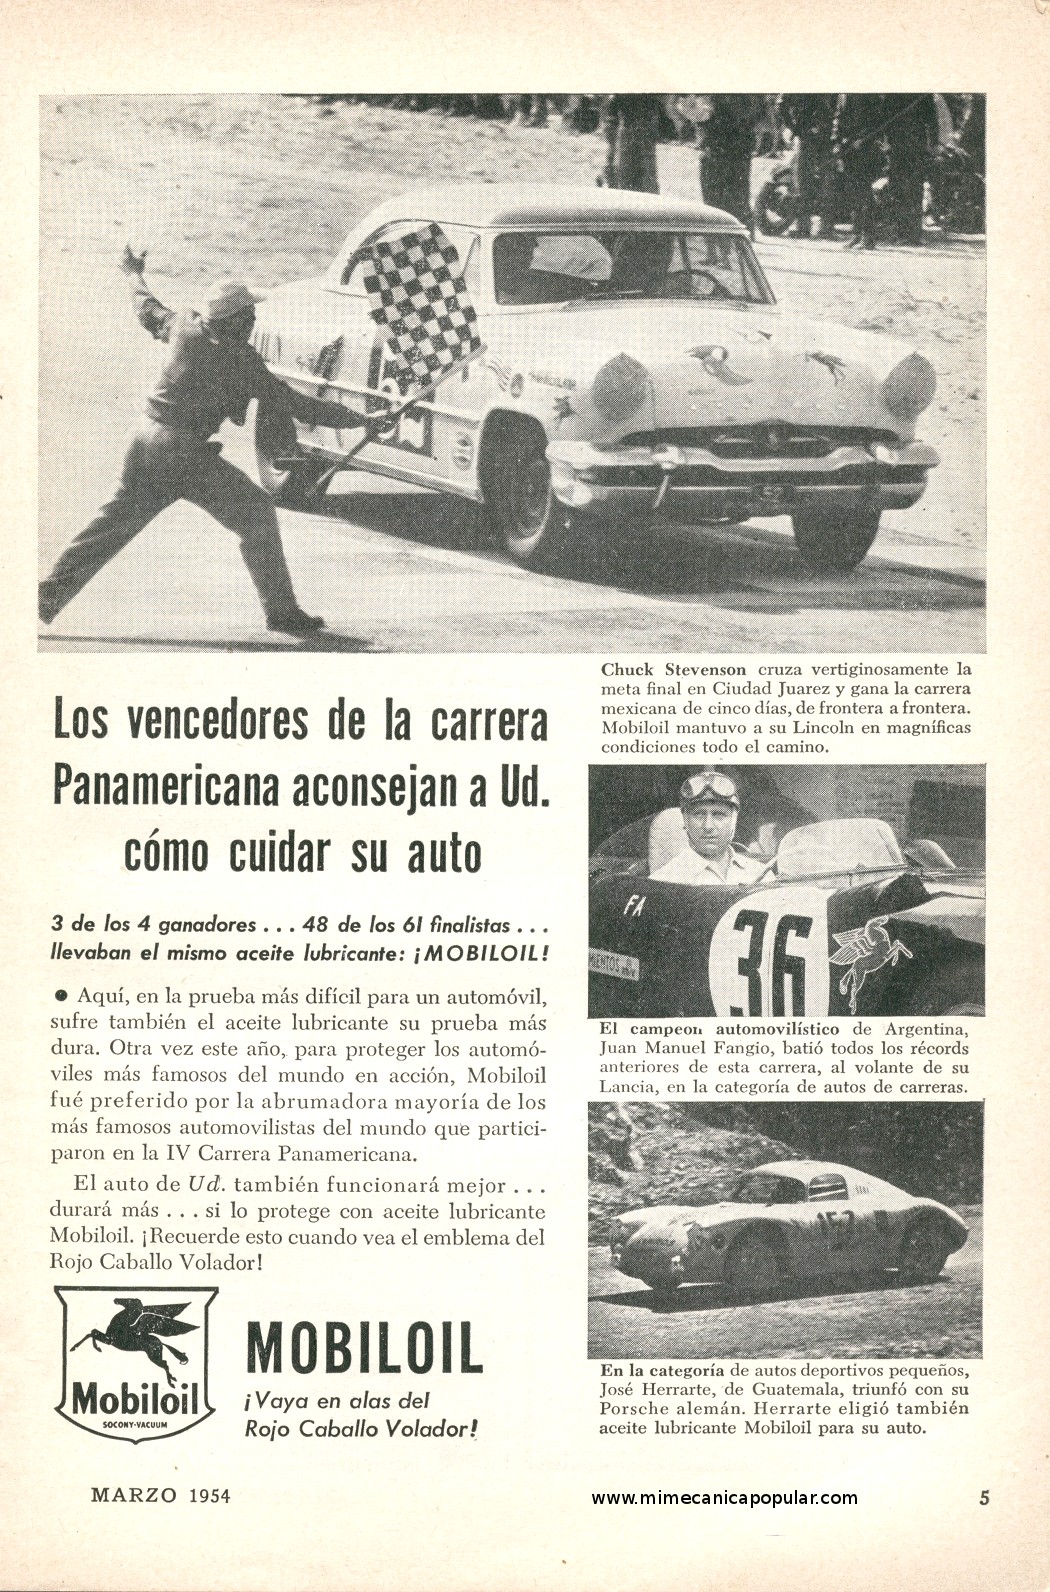 Publicidad - Mobiloil - Marzo 1954